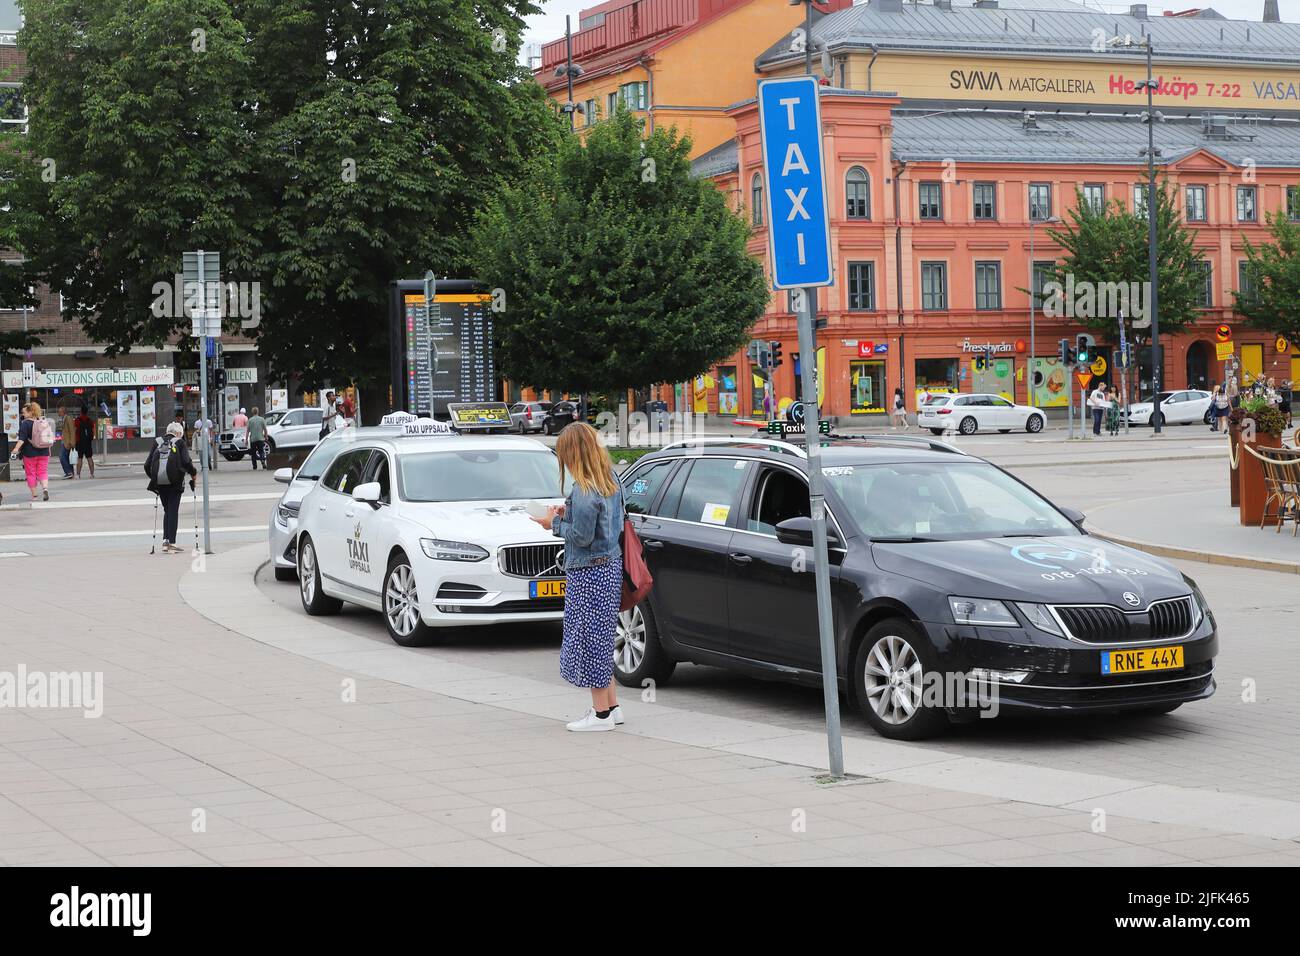 Uppsala, Suecia - 2 de julio de 2022: Taxis en la parada de taxis frente a la estación central de ferrocarril de Uppsala. Foto de stock